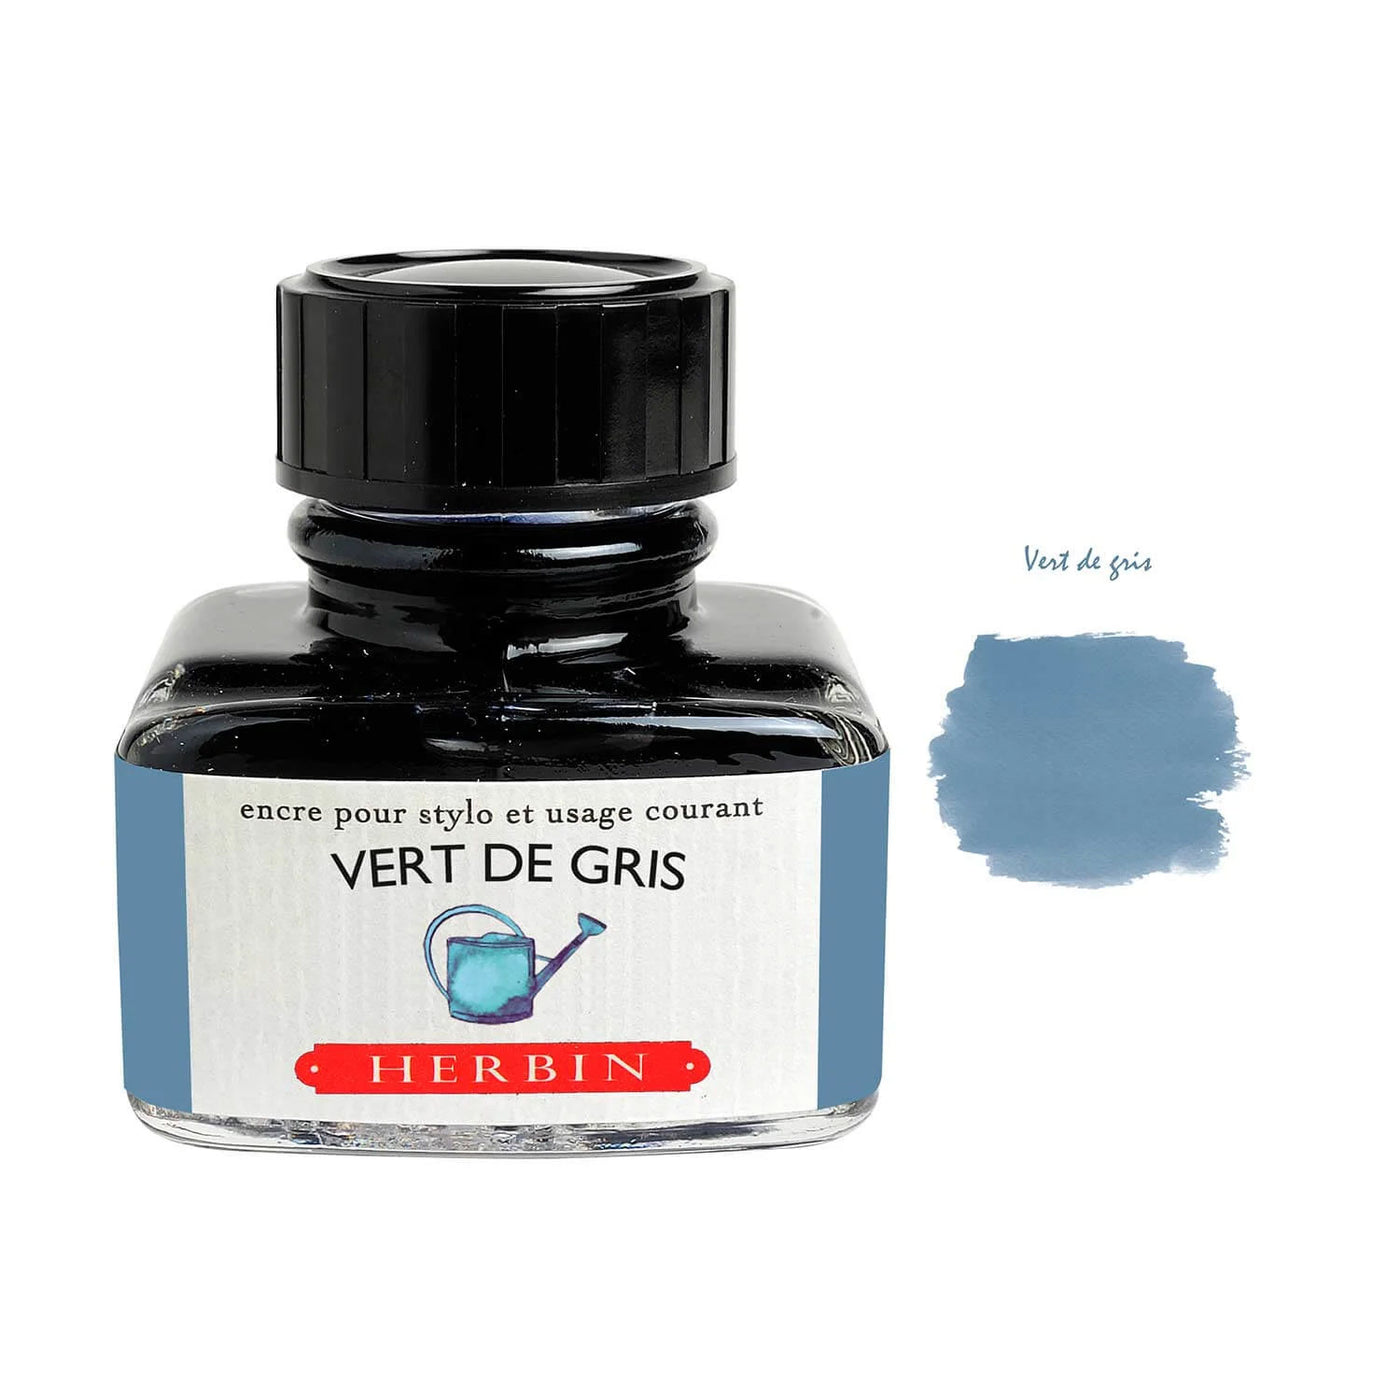 J Herbin "D" Series Ink Bottle Vert De Gris (Greyish Green) - 30ml 1